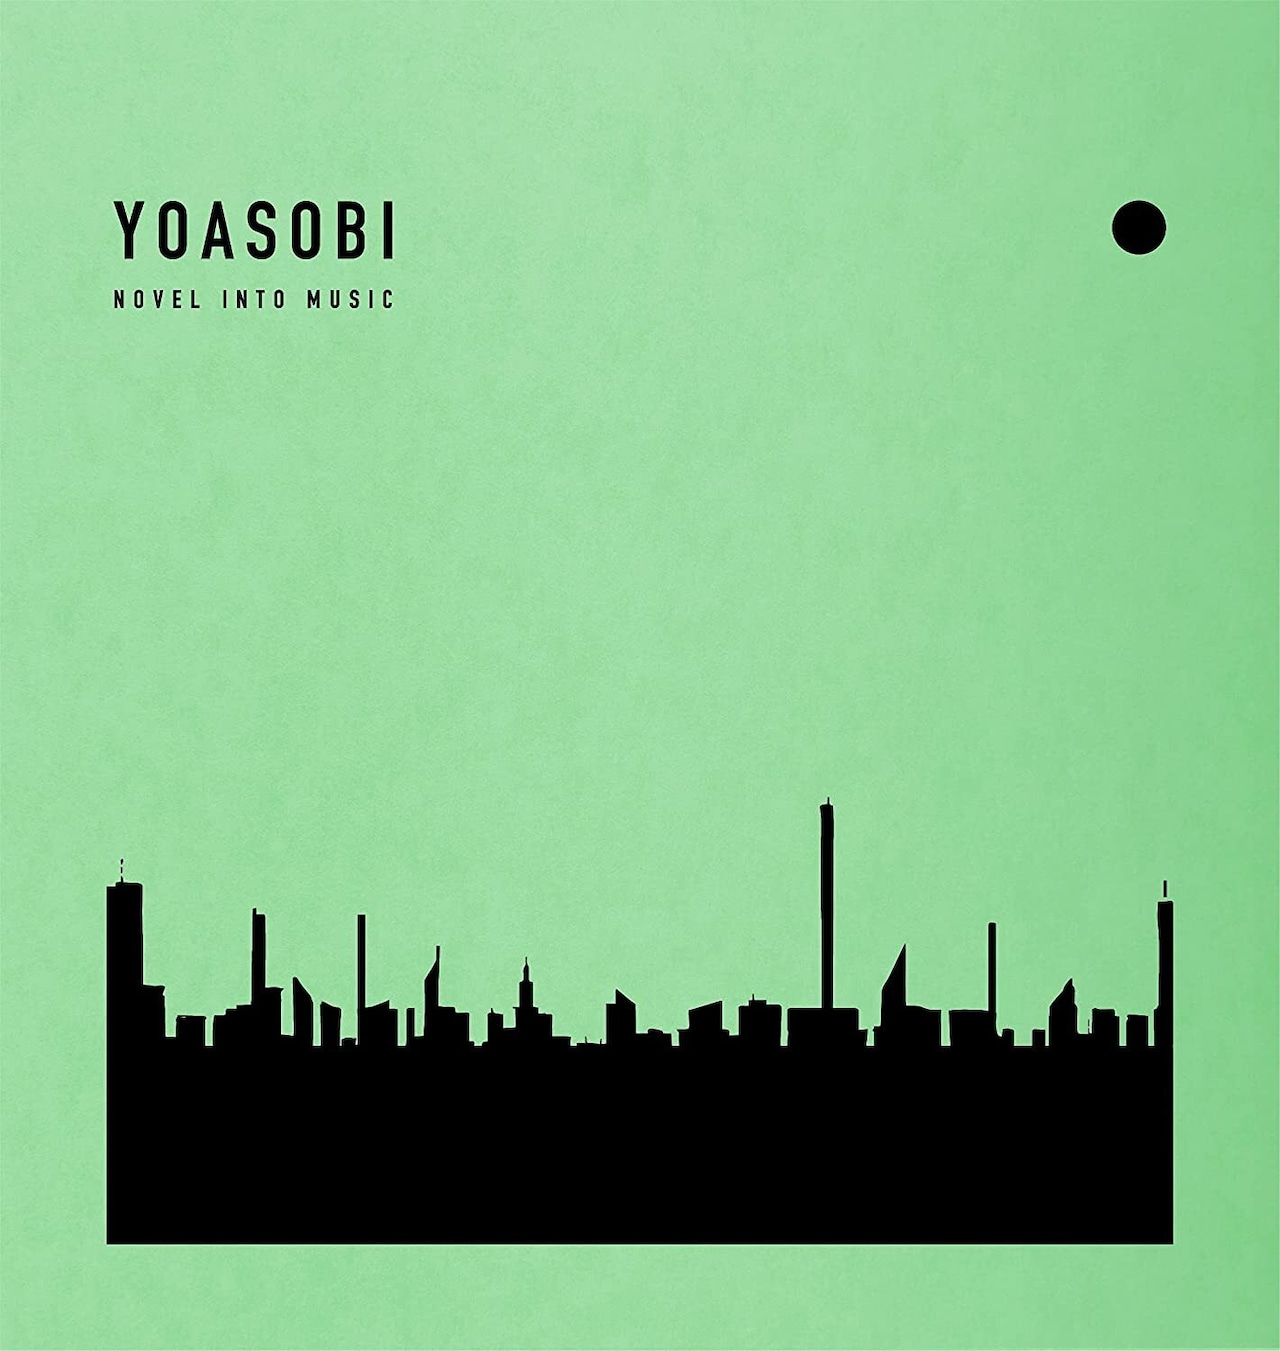 【完全生産限定盤】YOASOBI「THE BOOK 2」CD+バインダー付+オリジナルインデックス付